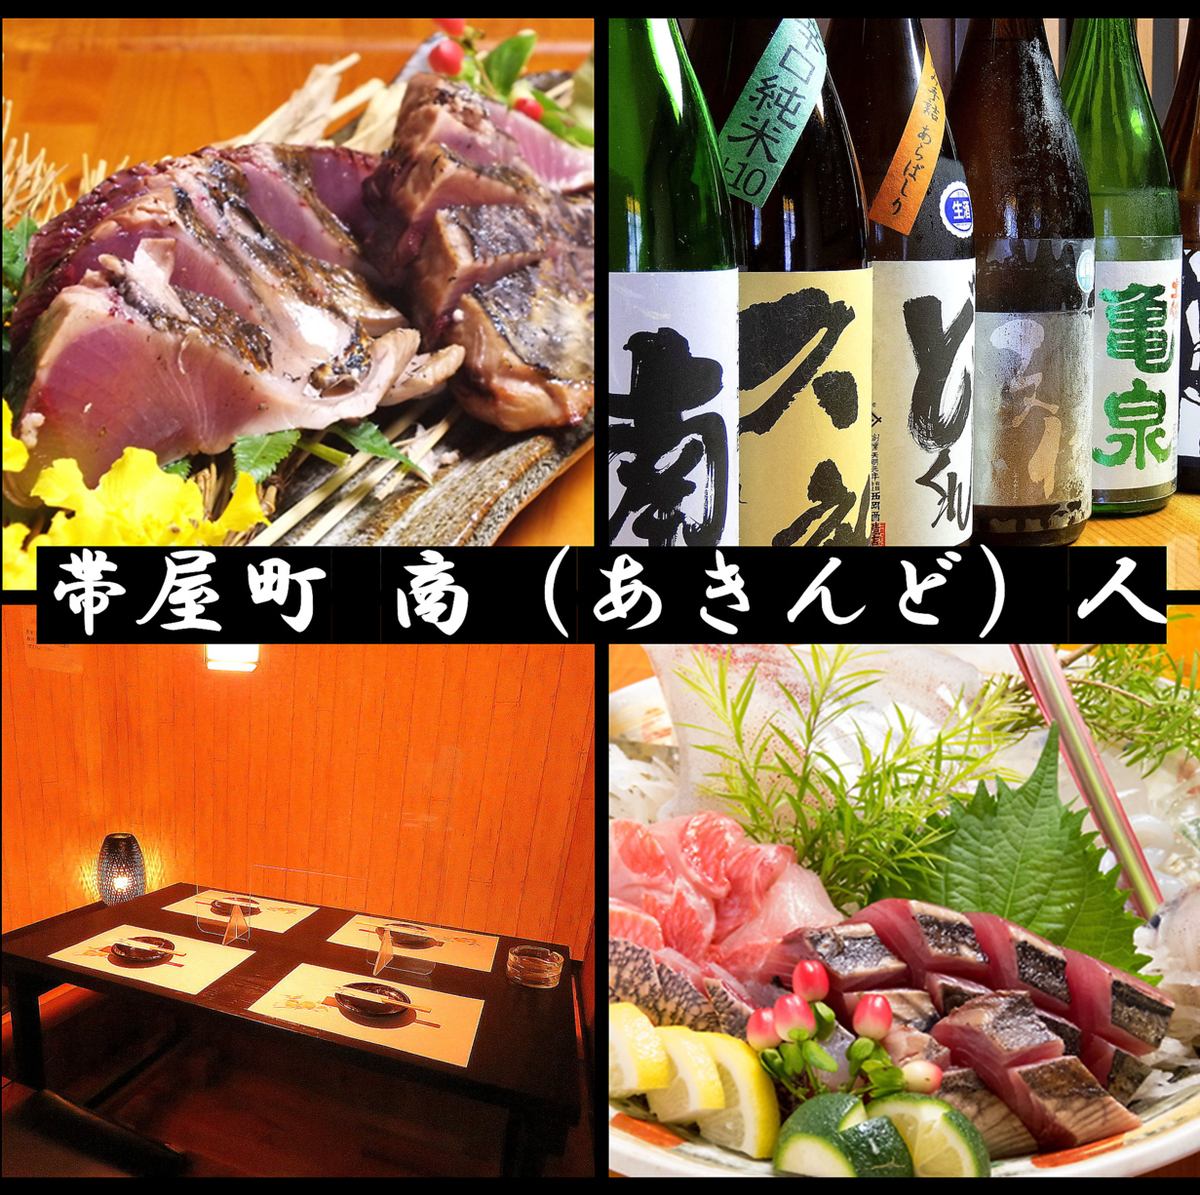 廣人市場附近♪可以品嚐時令菜餚和日本酒的新宴會廳◎來高知就做商人吧！